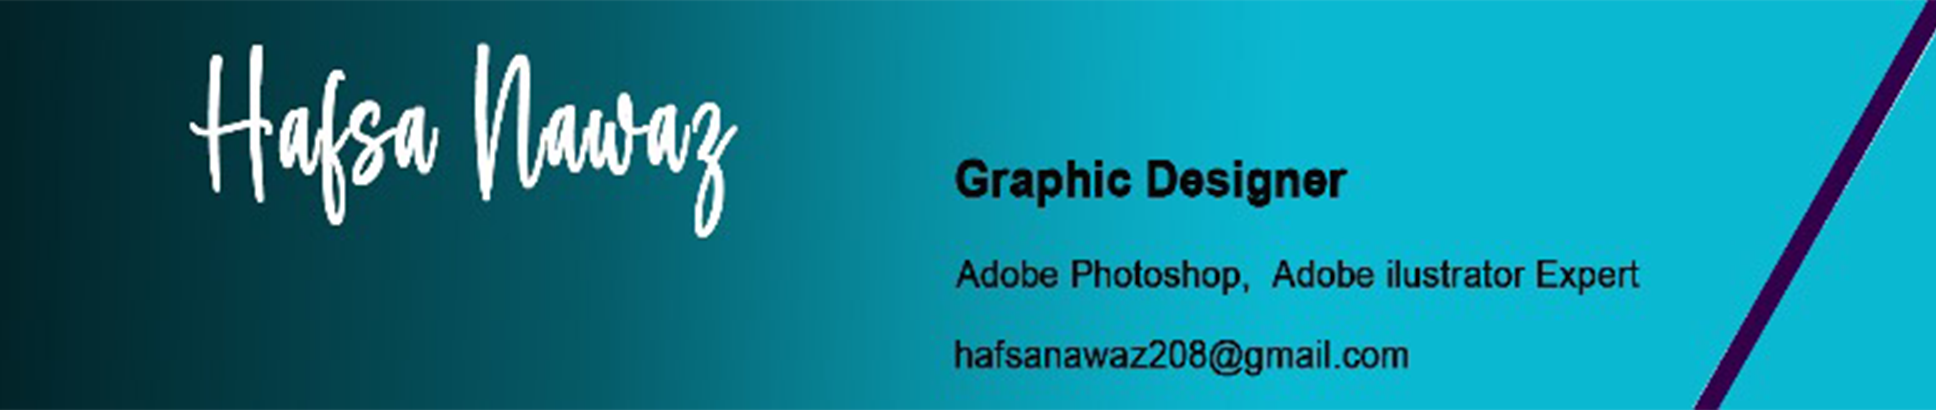 Hafsa Nawaz's profile banner